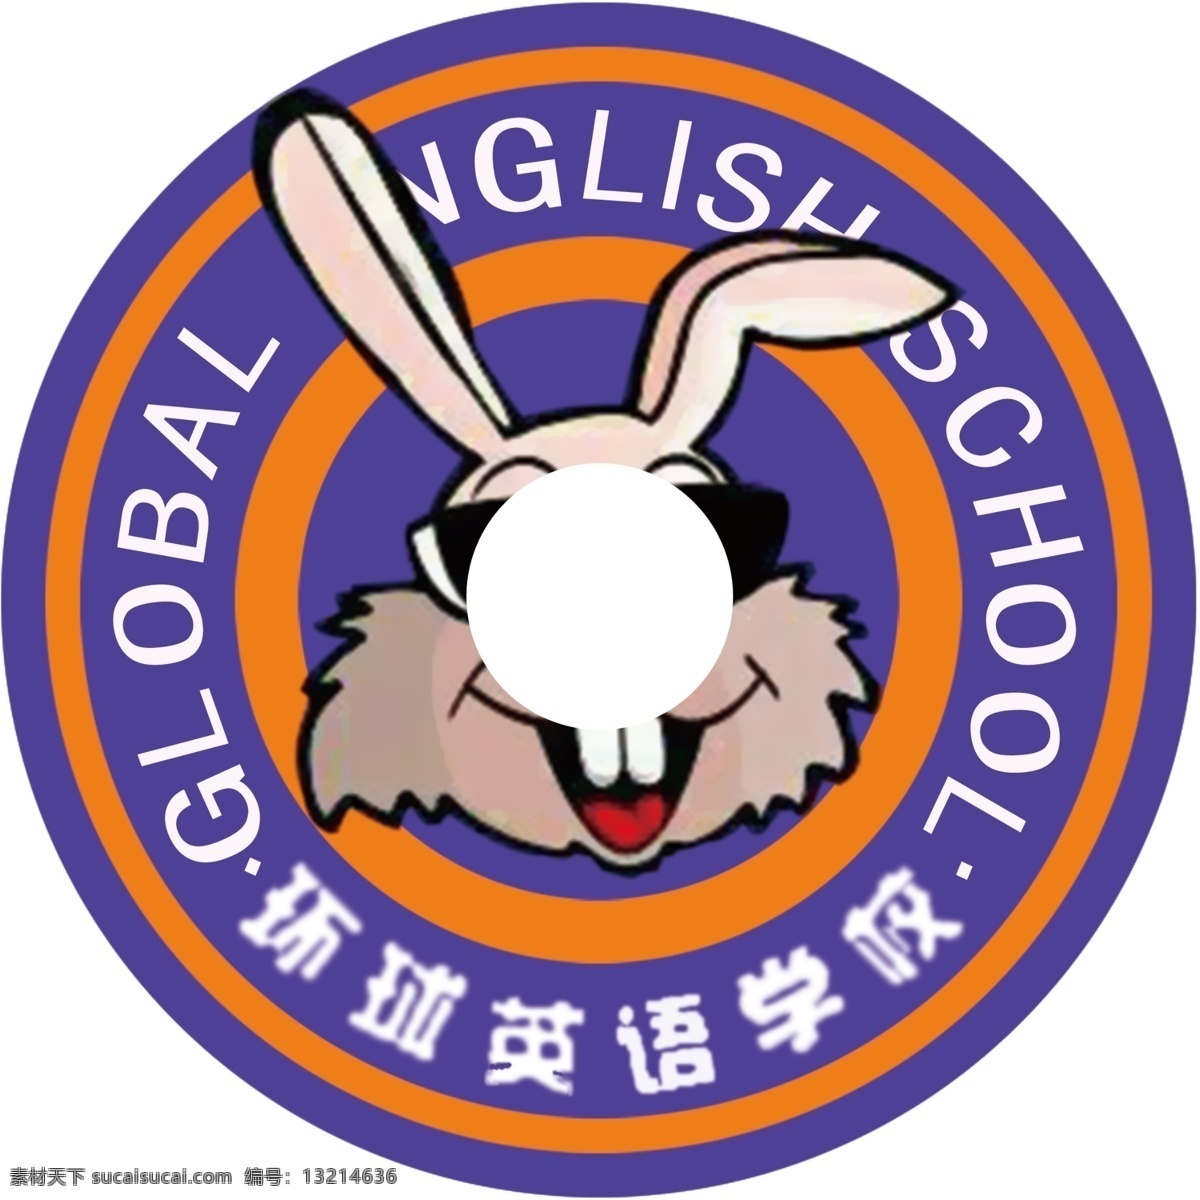 卡通兔子 环球 英语 学校 可通兔子 logo 蓝色